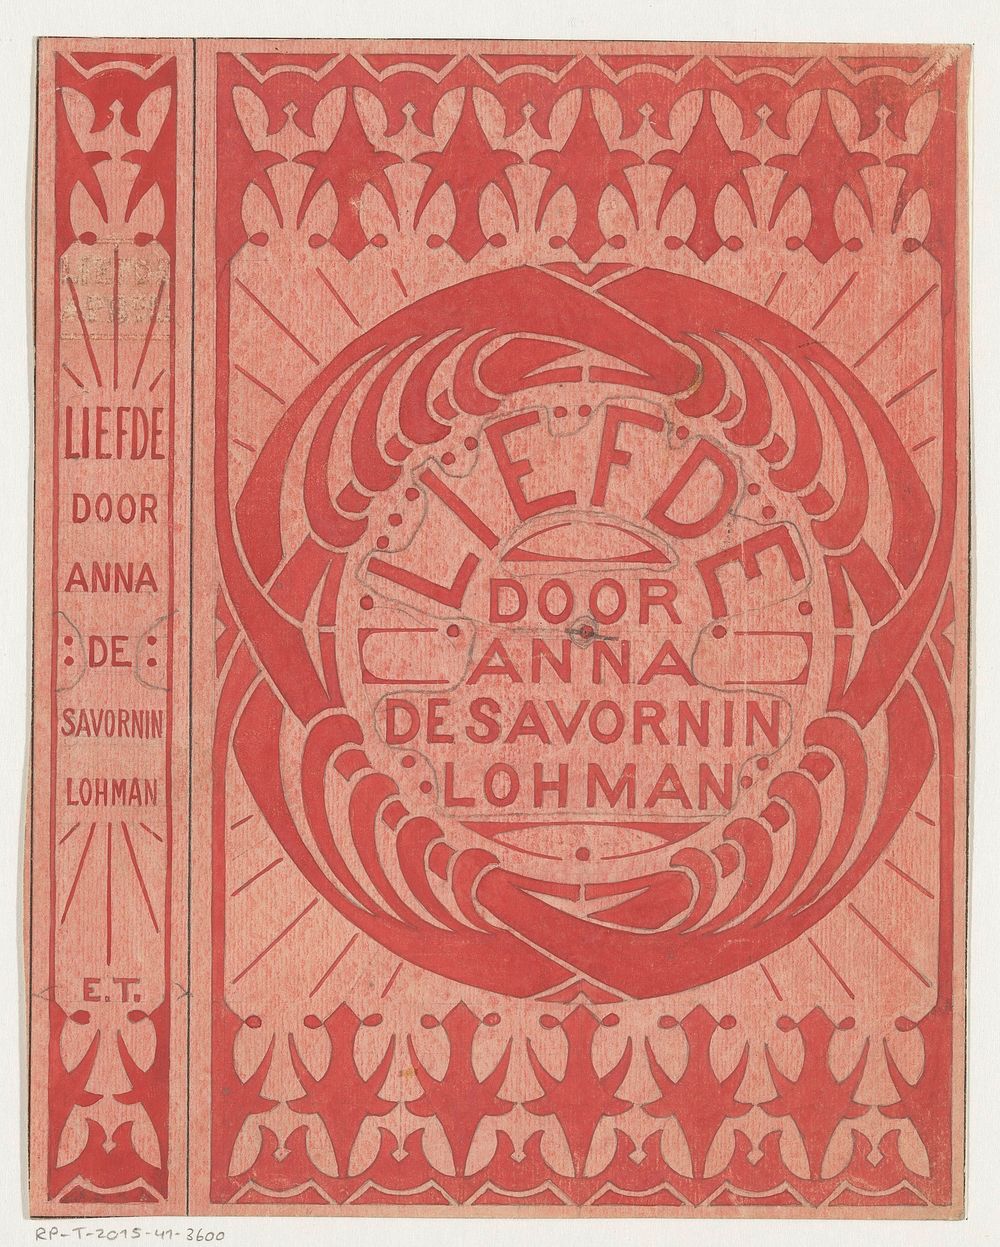 Bandontwerp voor: Anna de Savornin Lohman, Liefde, c. 1905-1907 (in or before 1905 - in or before 1907)